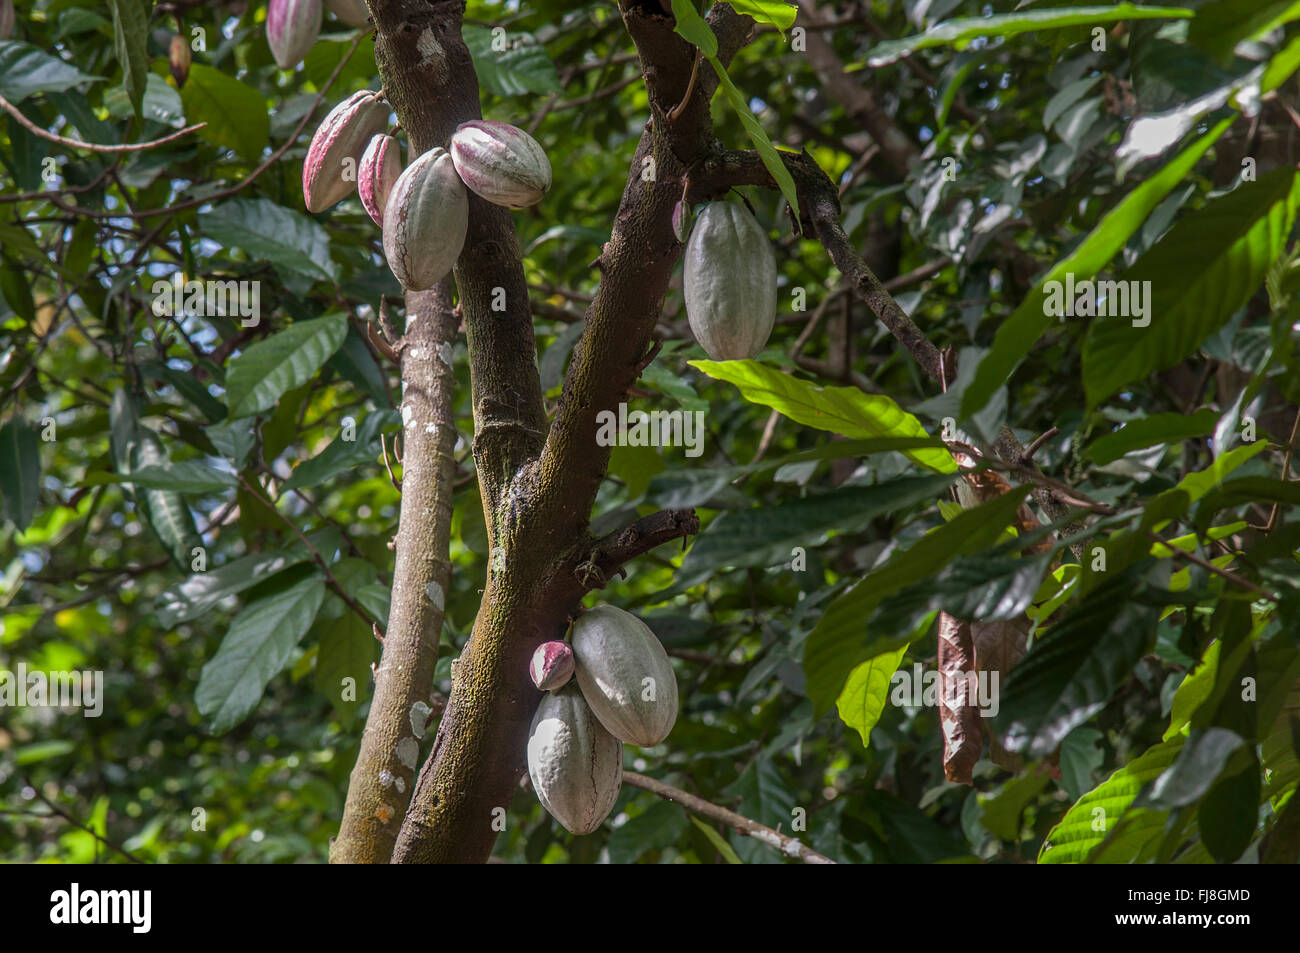 Cocoa pods tree, kochi, kerala, india, asia Stock Photo